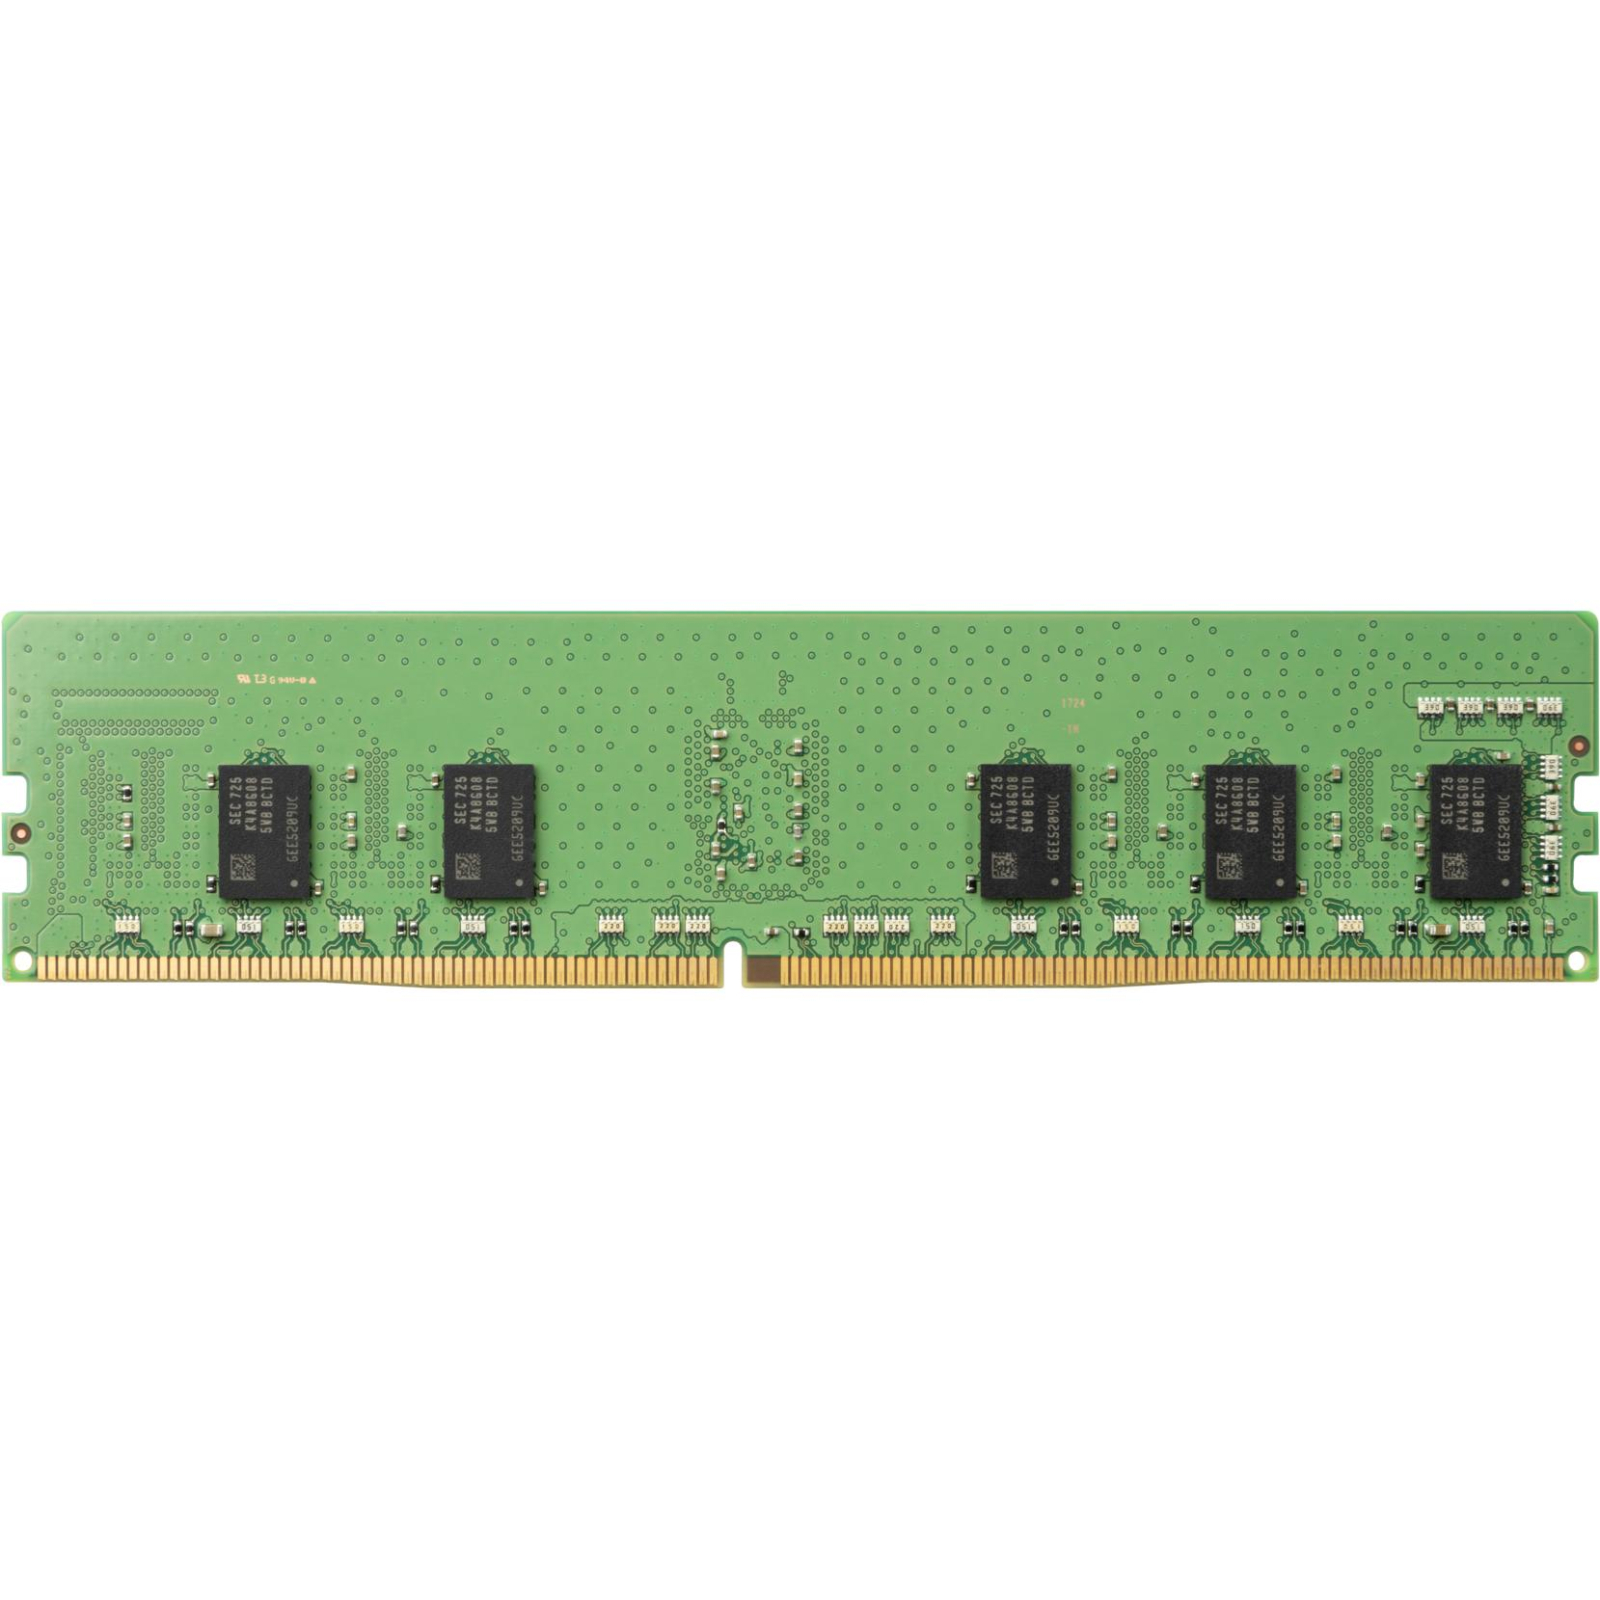 Модуль памяти для сервера DDR4 8GB ECC RDIMM 2666MHz 1Rx8 1.2V CL19 HP (1XD84AA) изображение 2